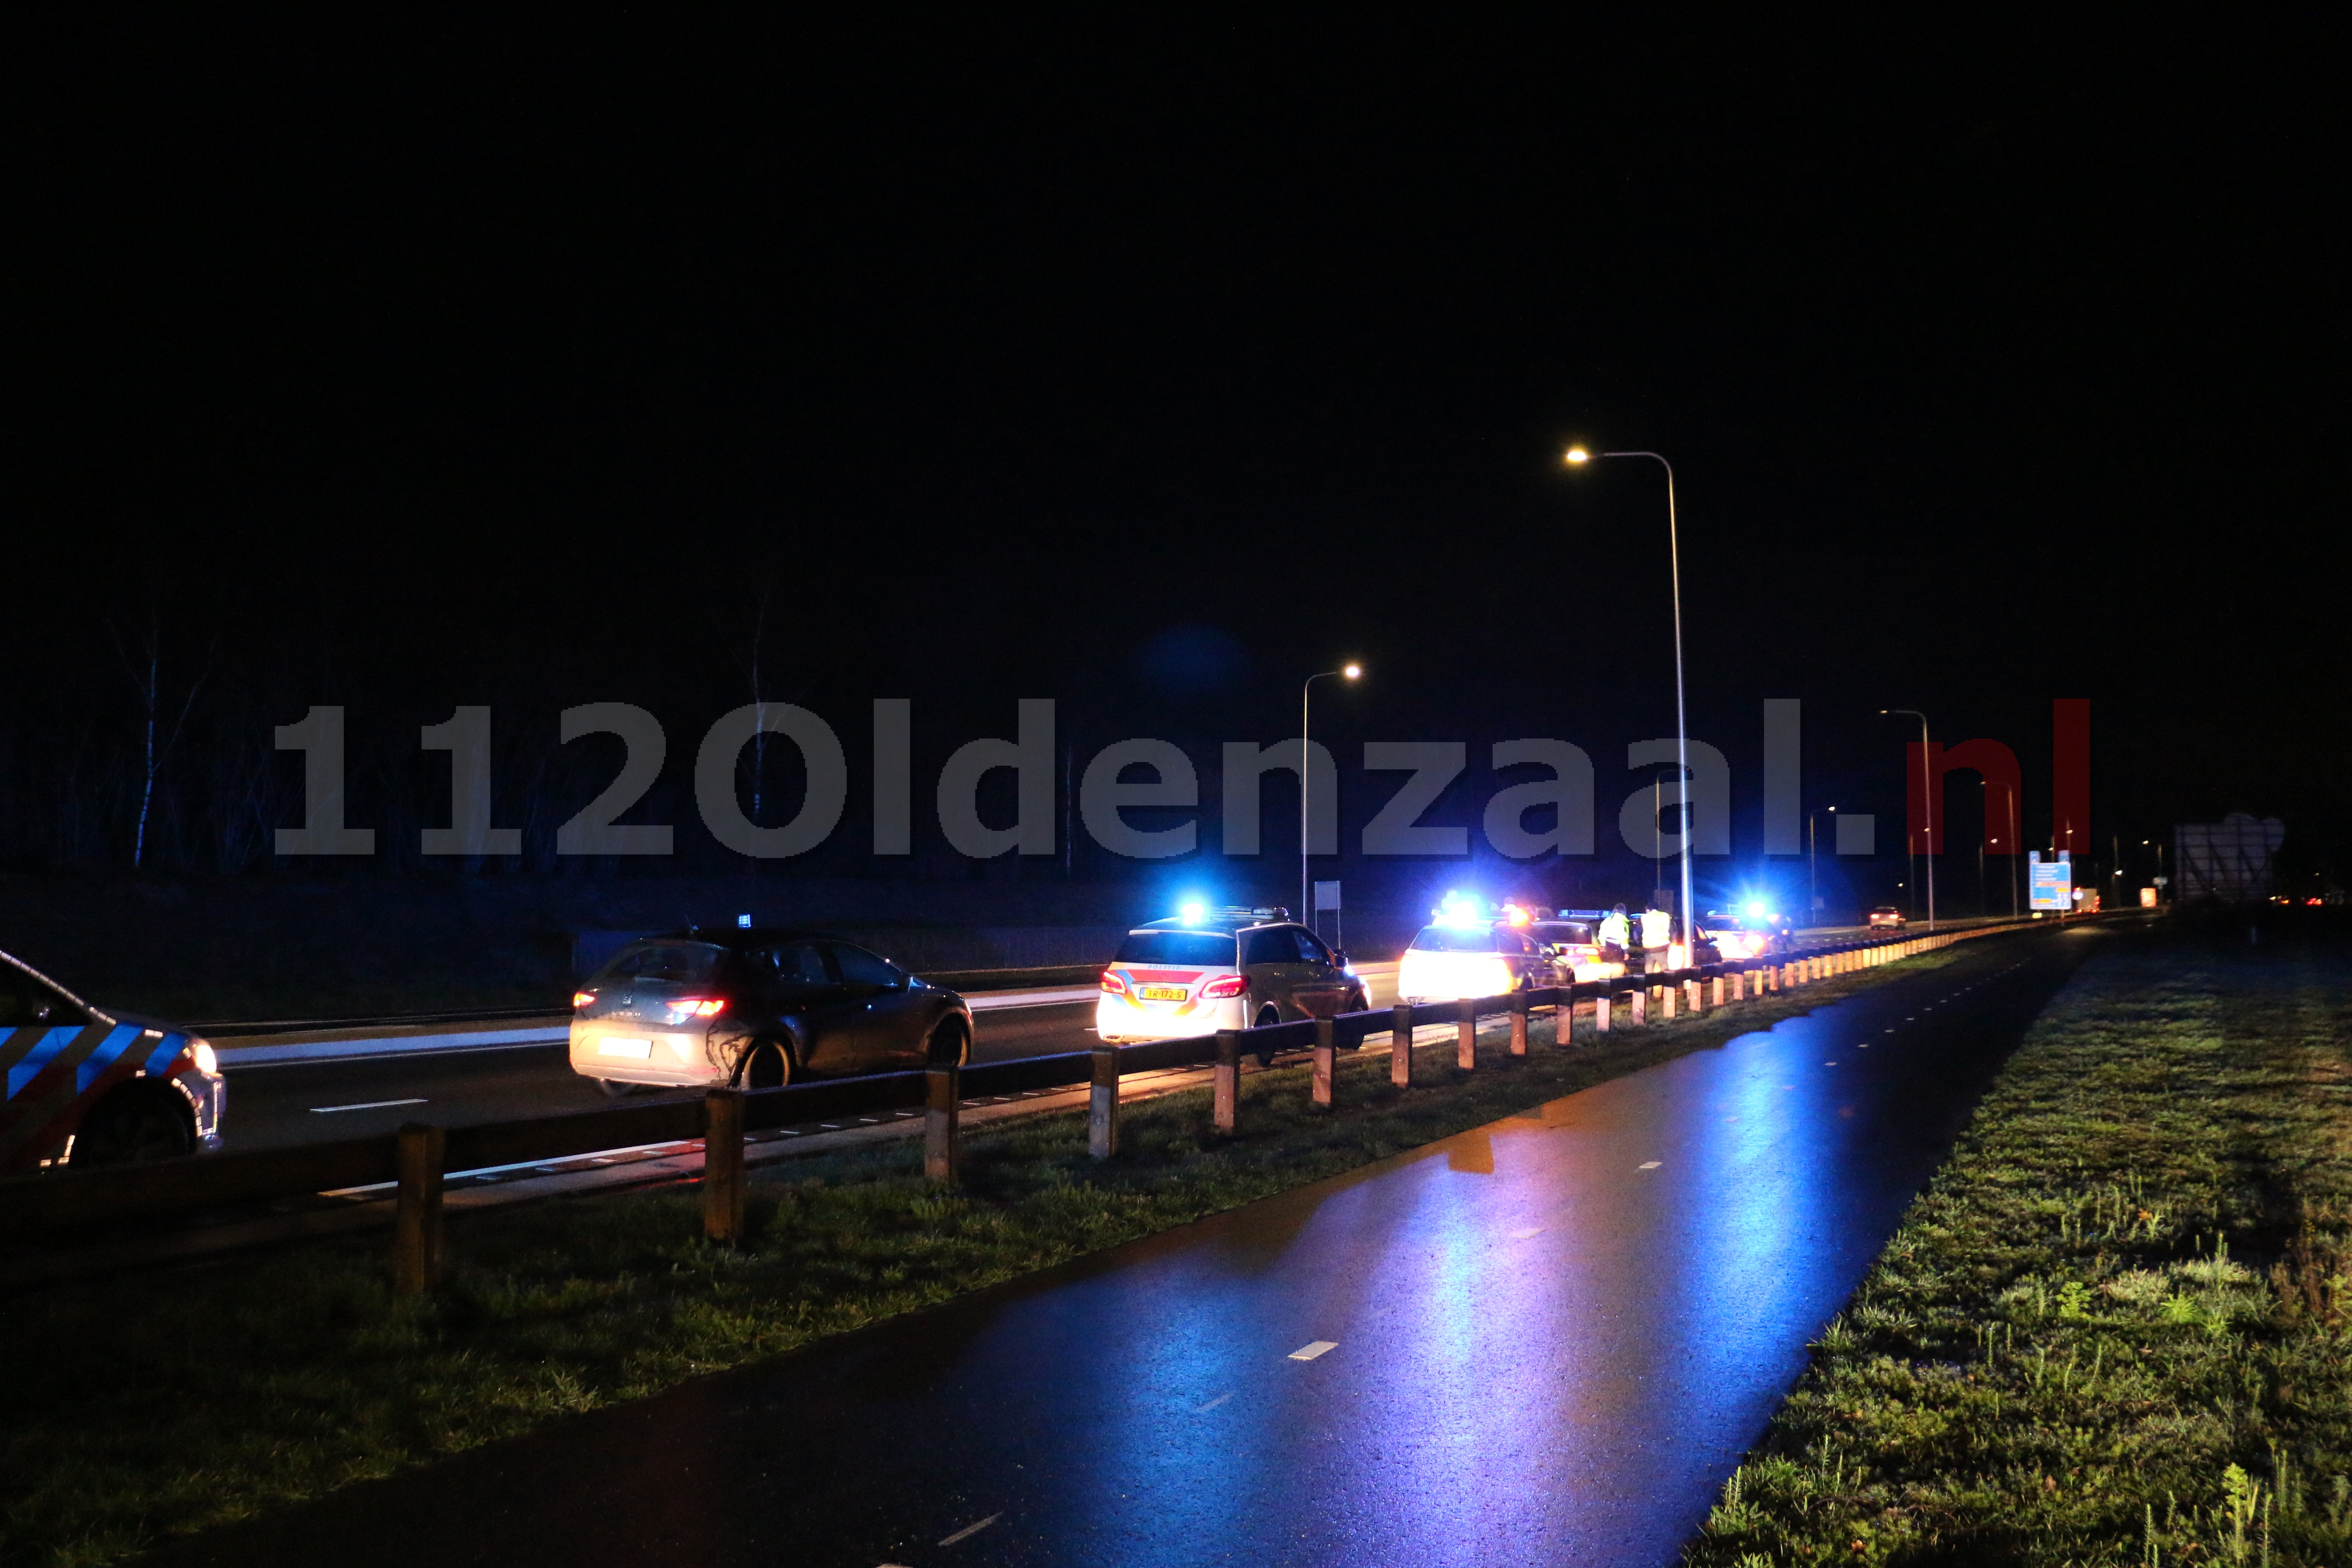 Duitse en Nederlandse politie houden auto staande in Oldenzaal